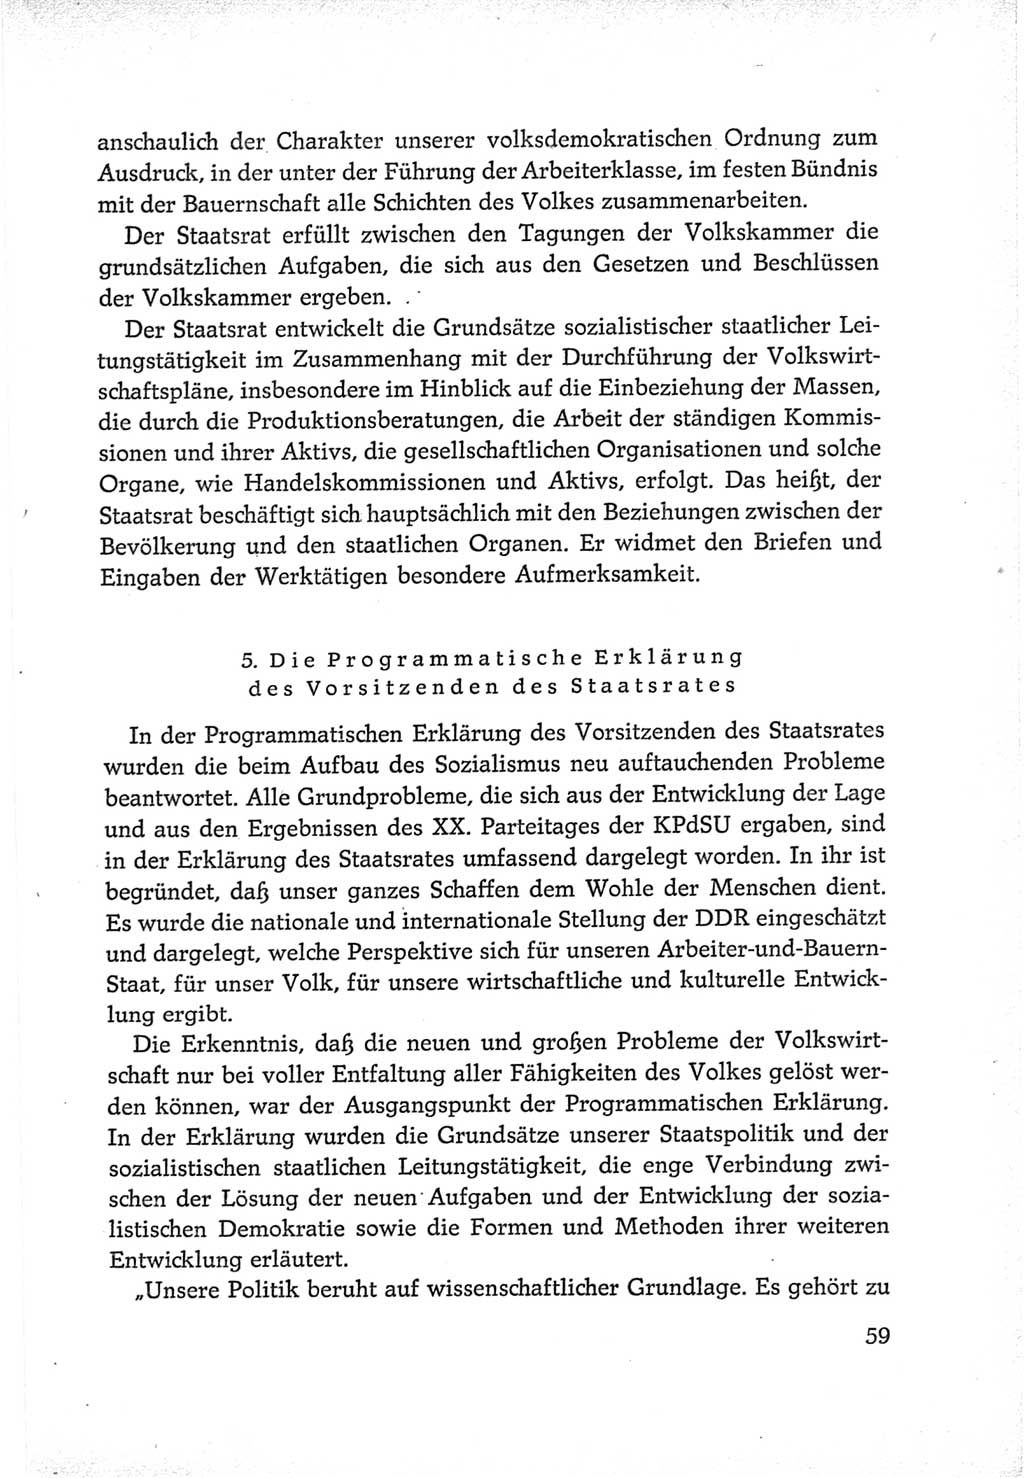 Protokoll der Verhandlungen des Ⅵ. Parteitages der Sozialistischen Einheitspartei Deutschlands (SED) [Deutsche Demokratische Republik (DDR)] 1963, Band Ⅳ, Seite 59 (Prot. Verh. Ⅵ. PT SED DDR 1963, Bd. Ⅳ, S. 59)